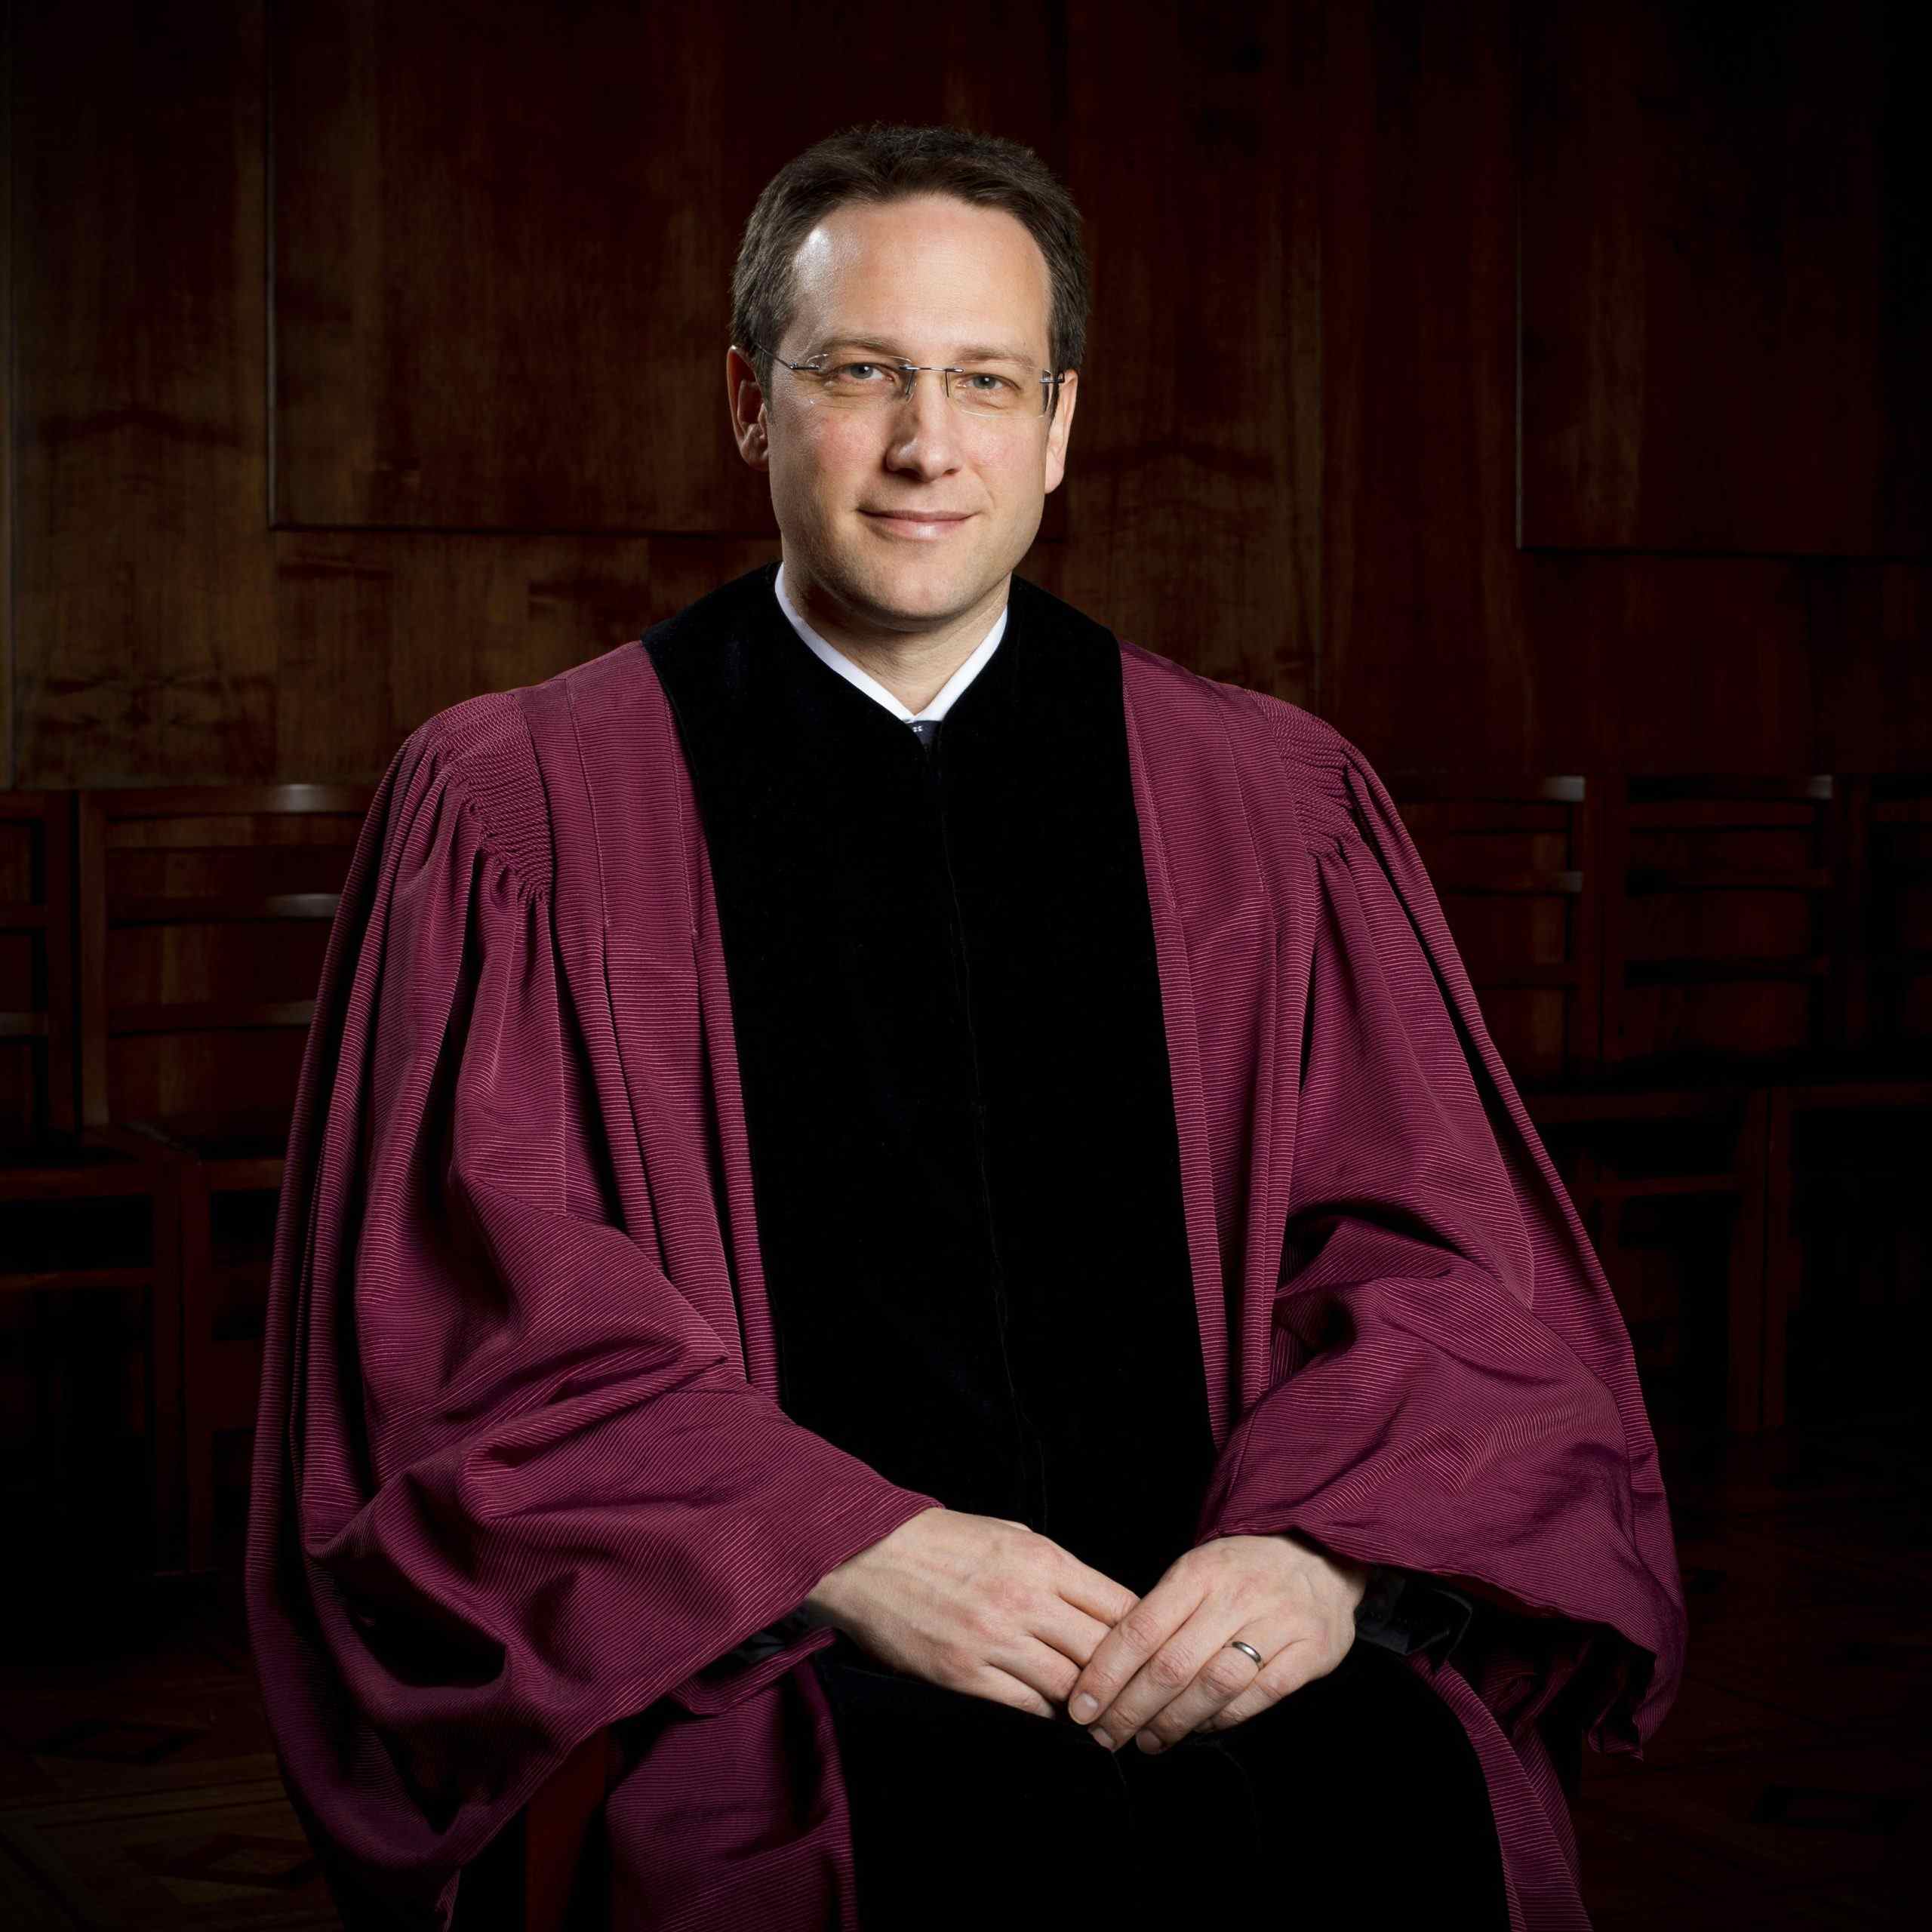 Ustavni sodniki: “Mimamo pristojnosti za opredeljevanje do očitkov Klemnu Jakliču”